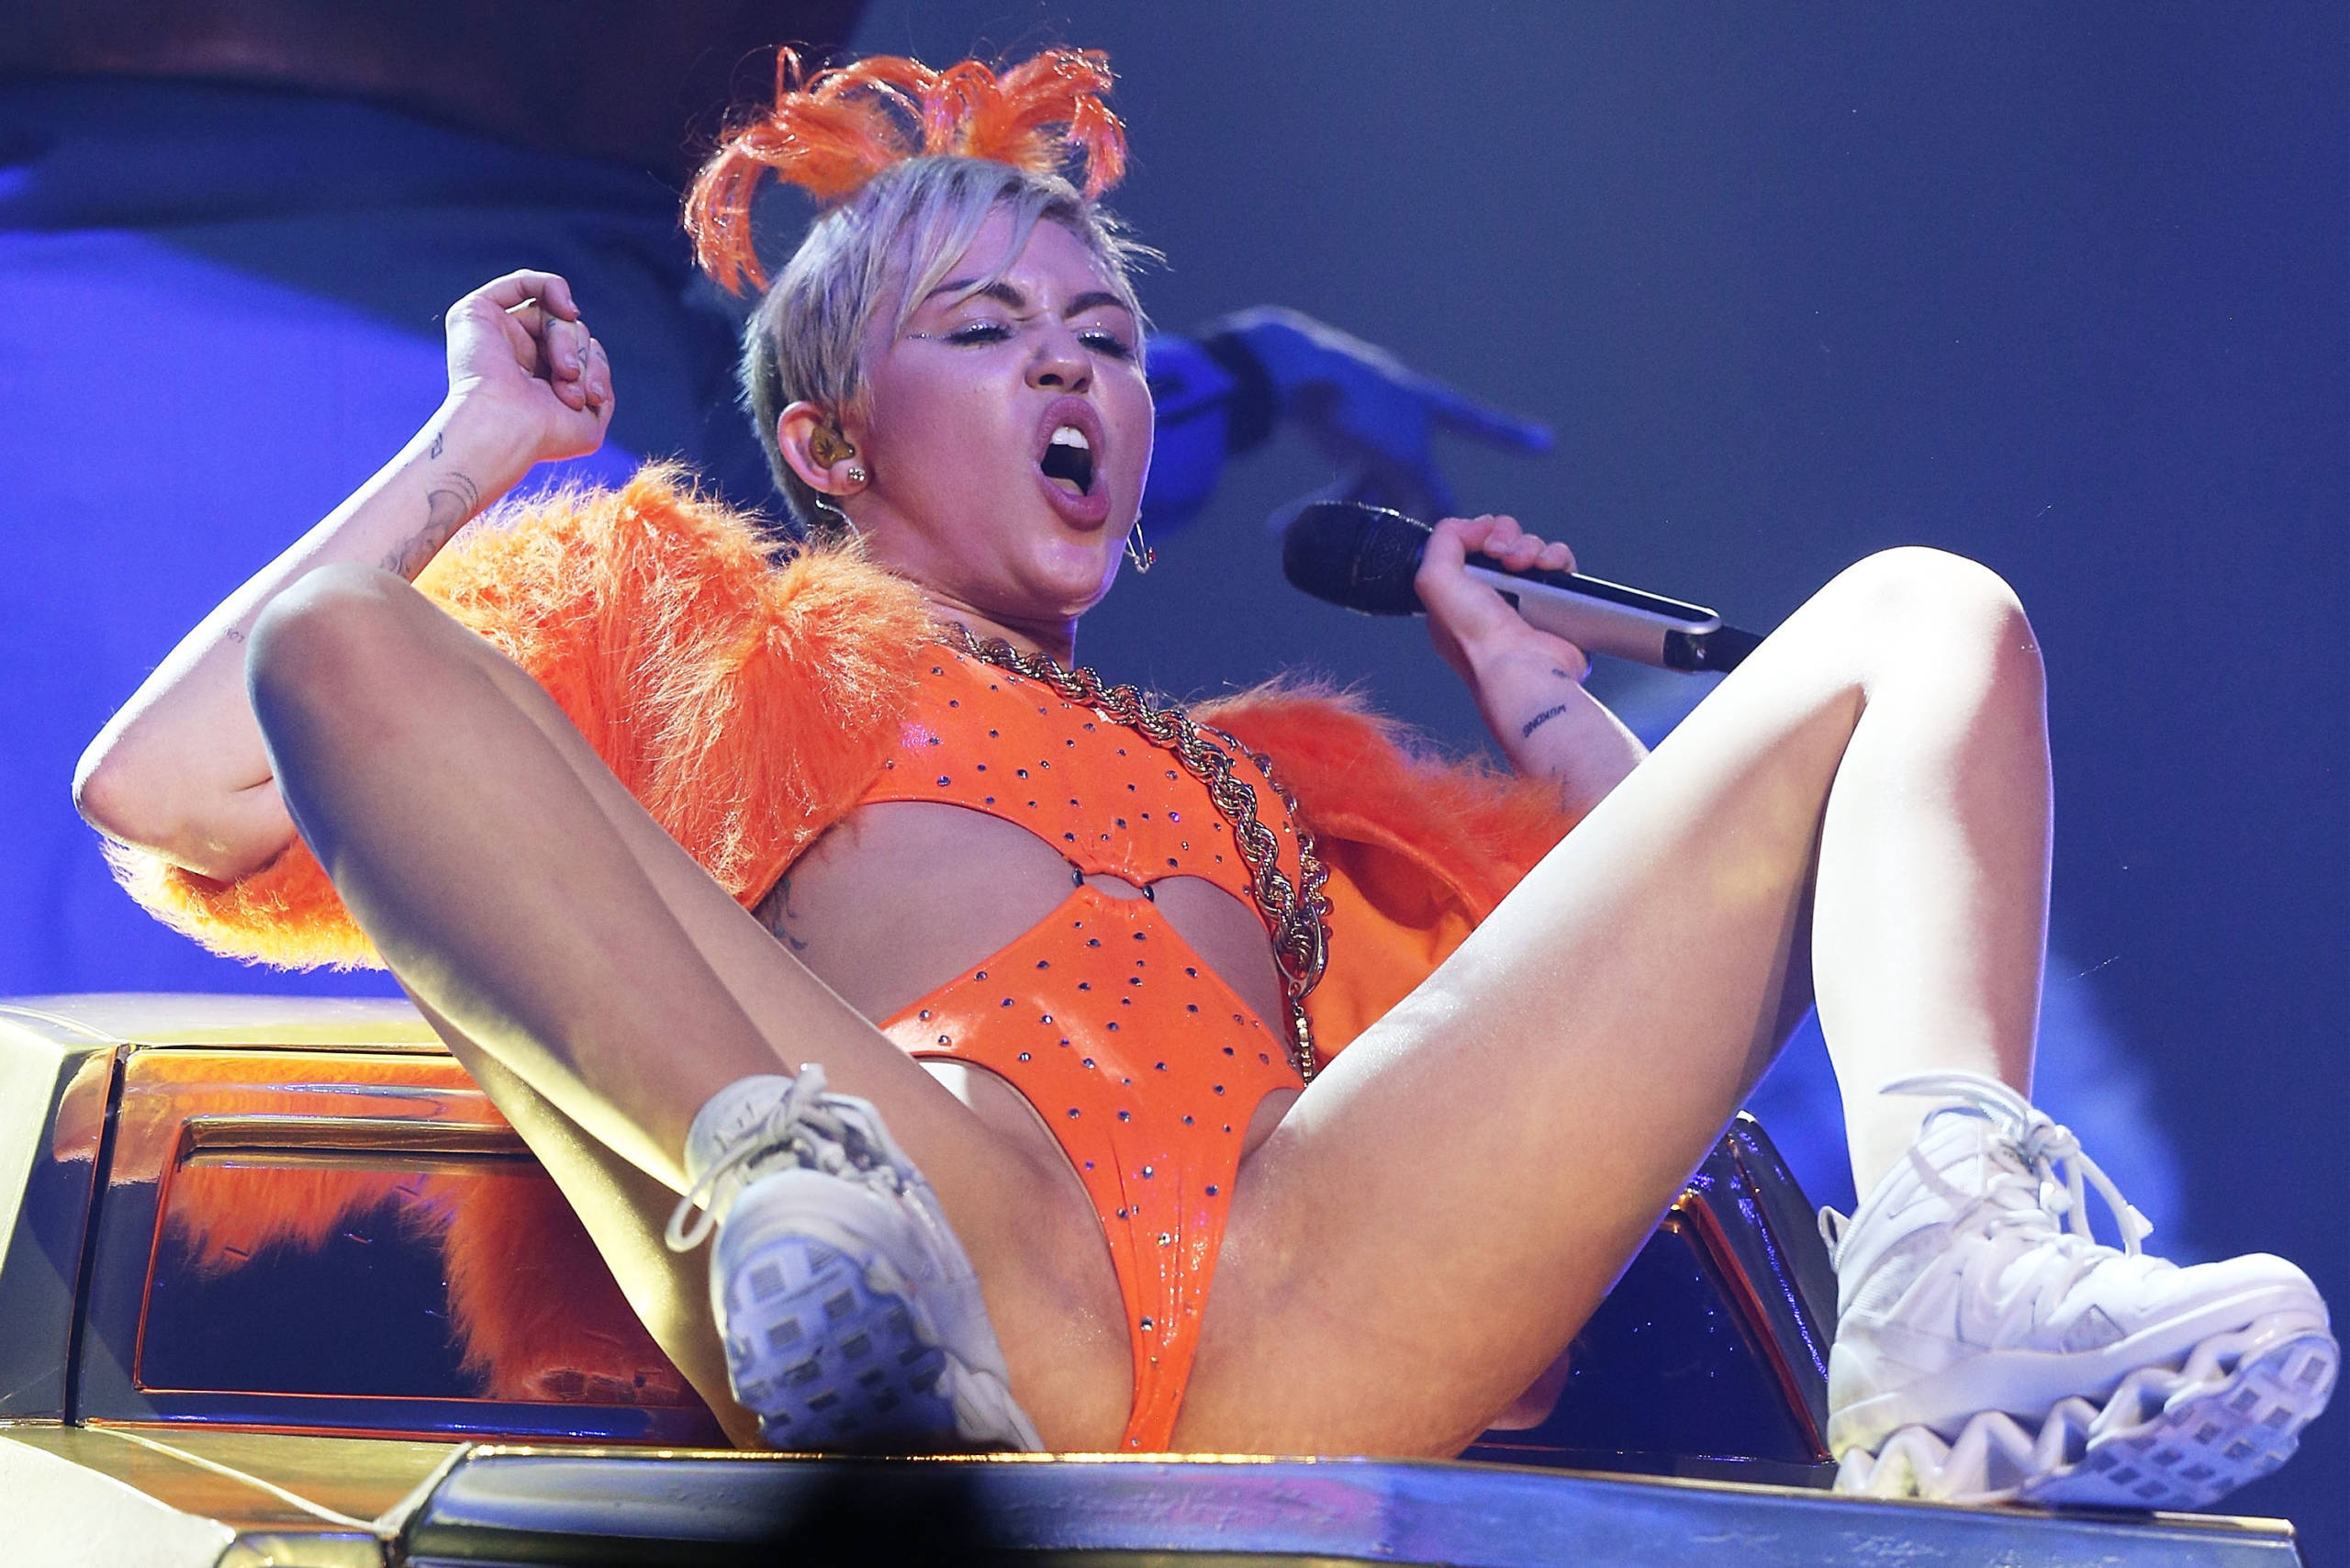 Kein Symbolbild, sondern ein Schnappschuss aus einem Konzert von Miley Cyrus im Jahr 2014